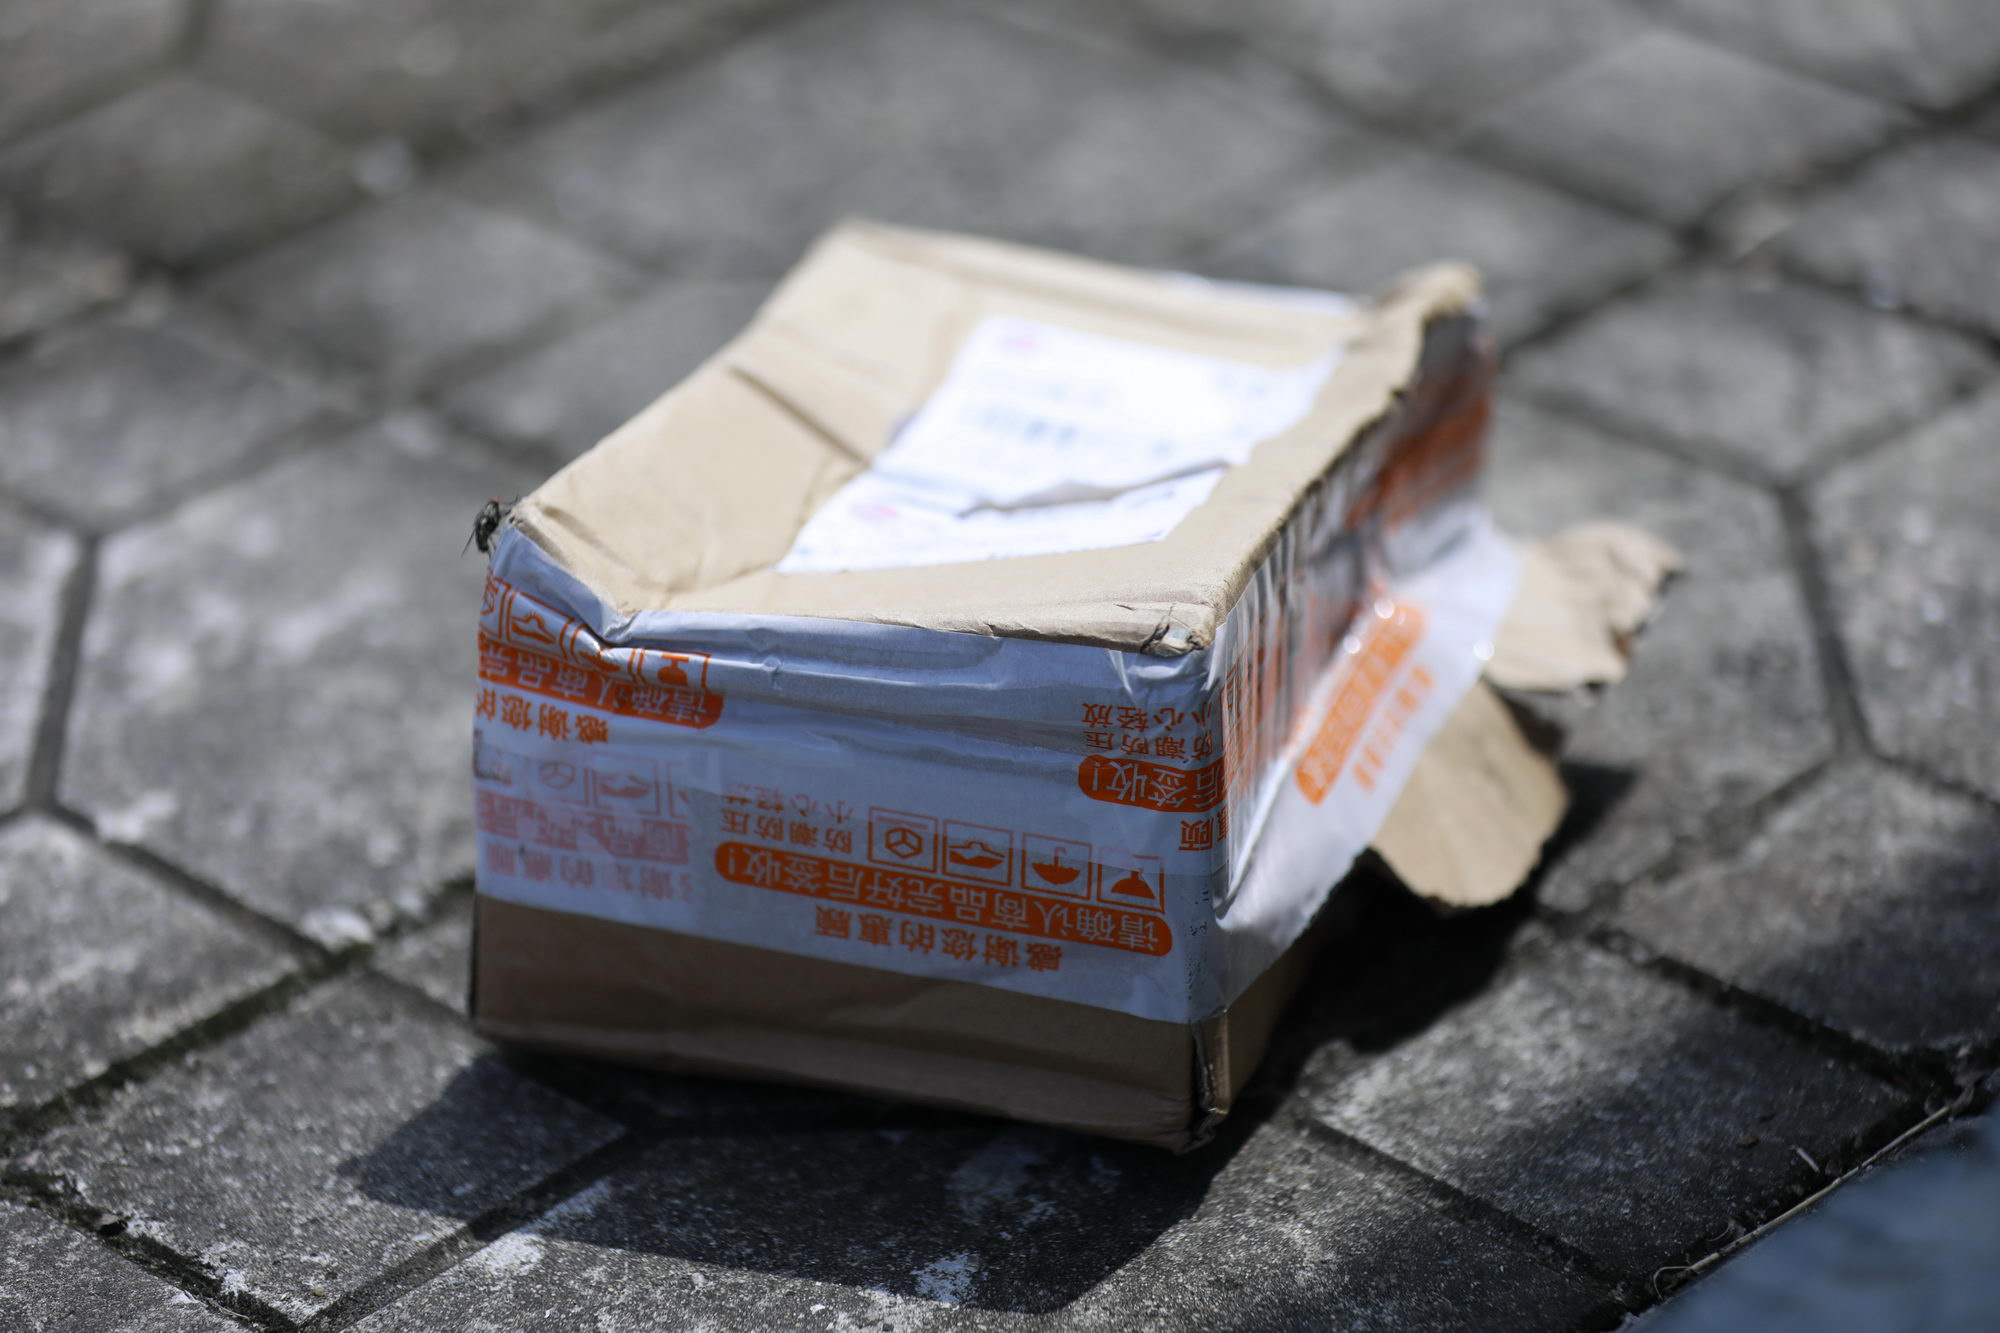 天津市将邮件快件塑料包装治理纳入塑料污染治理方案